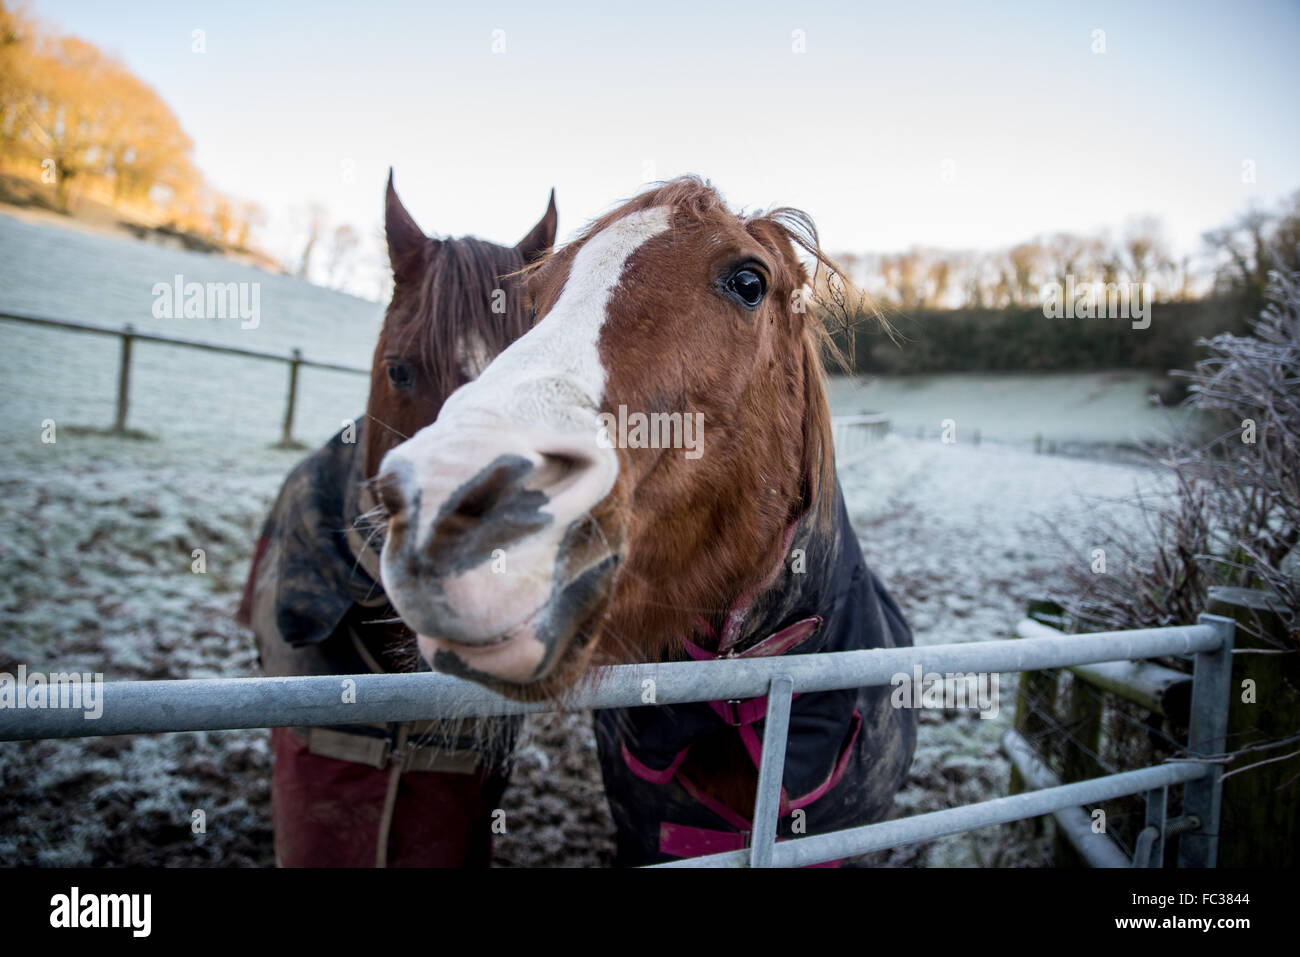 Llandysul, Ceredigion REGNO UNITO 20 gennaio 2016 UK meteo: due cavalli stare accanto a un cancello in loro cappotti invernali come temperature scesero a -4 per una notte n parti di Ceredigion Credito: Steffan Llewelyn/Alamy Live News Foto Stock